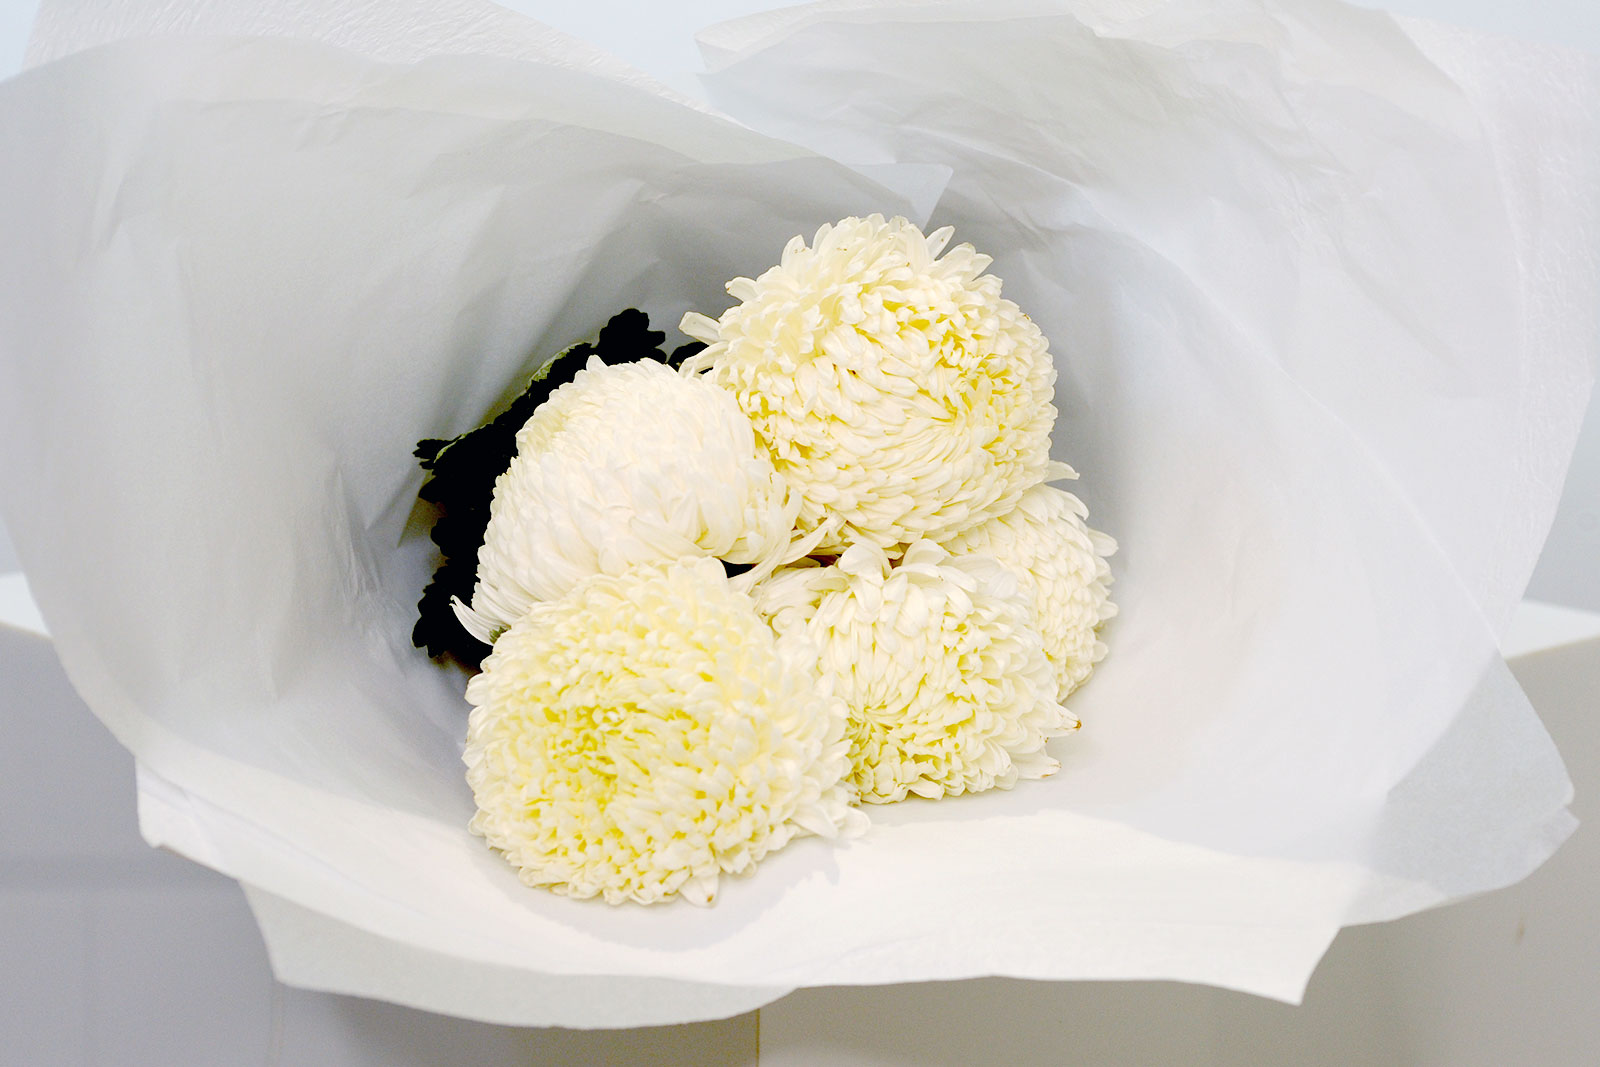 Disbud Chrysanthemum - White